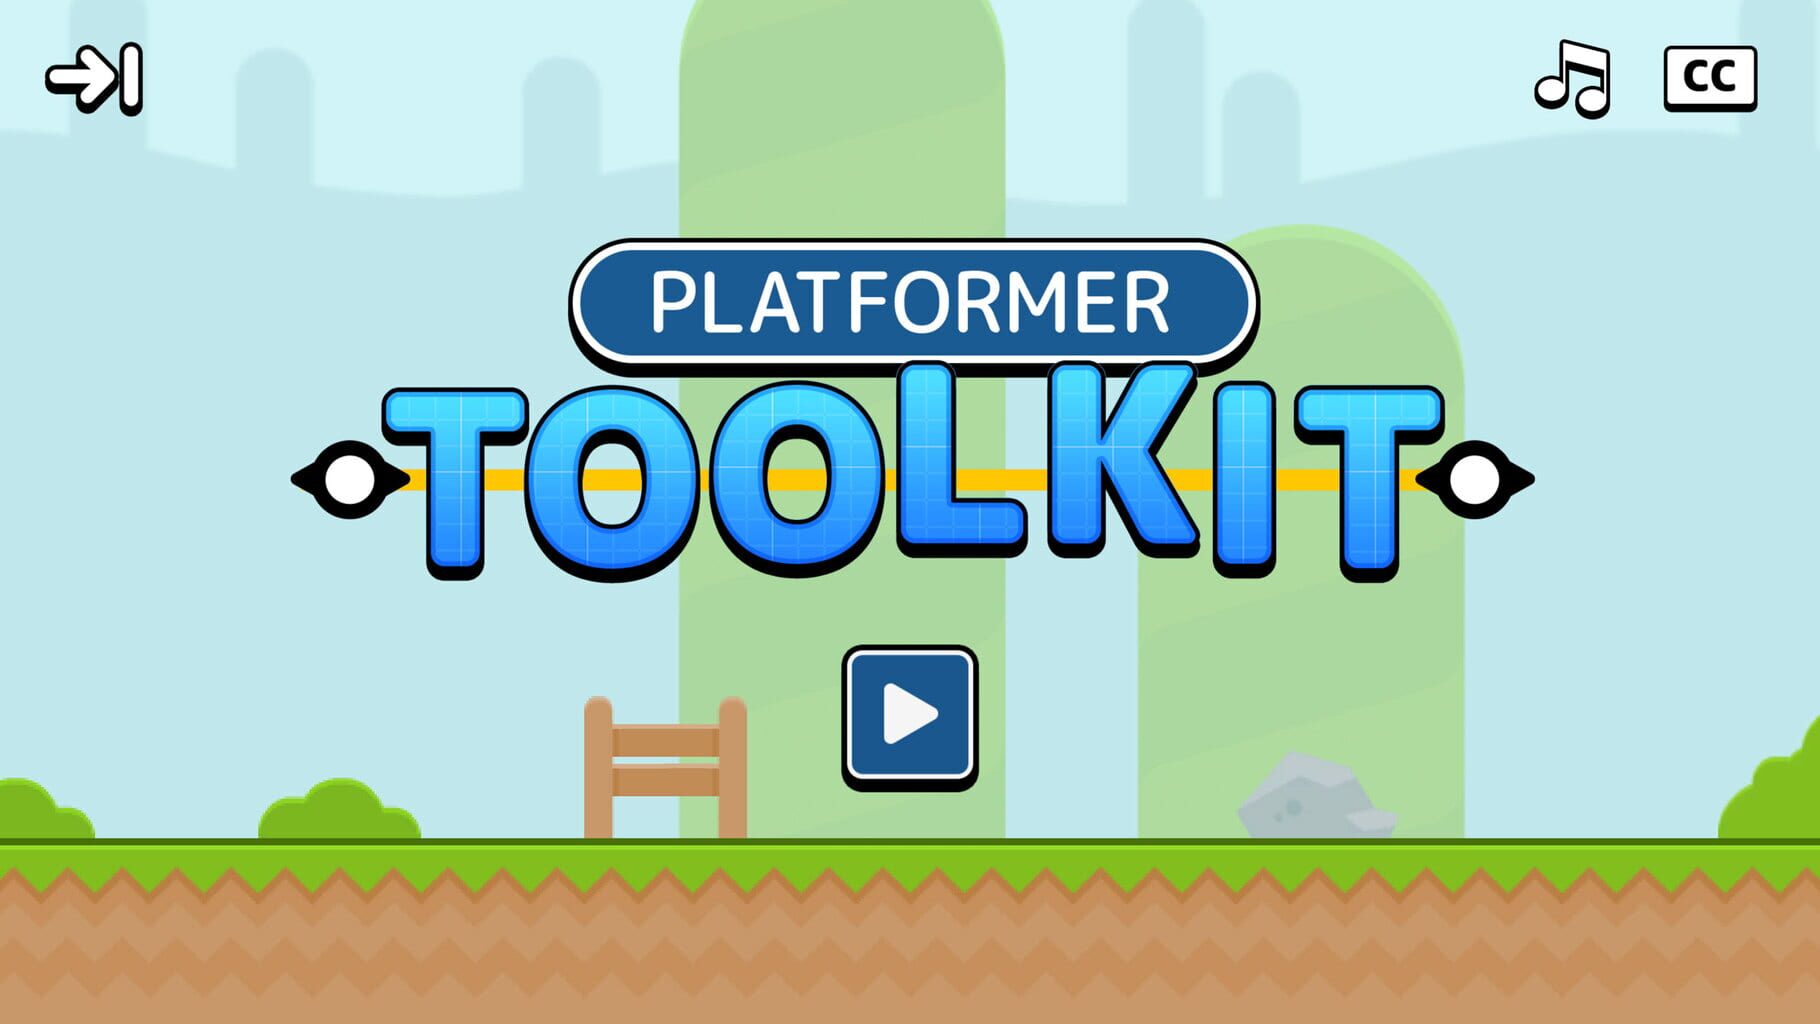 Platformer Toolkit Image